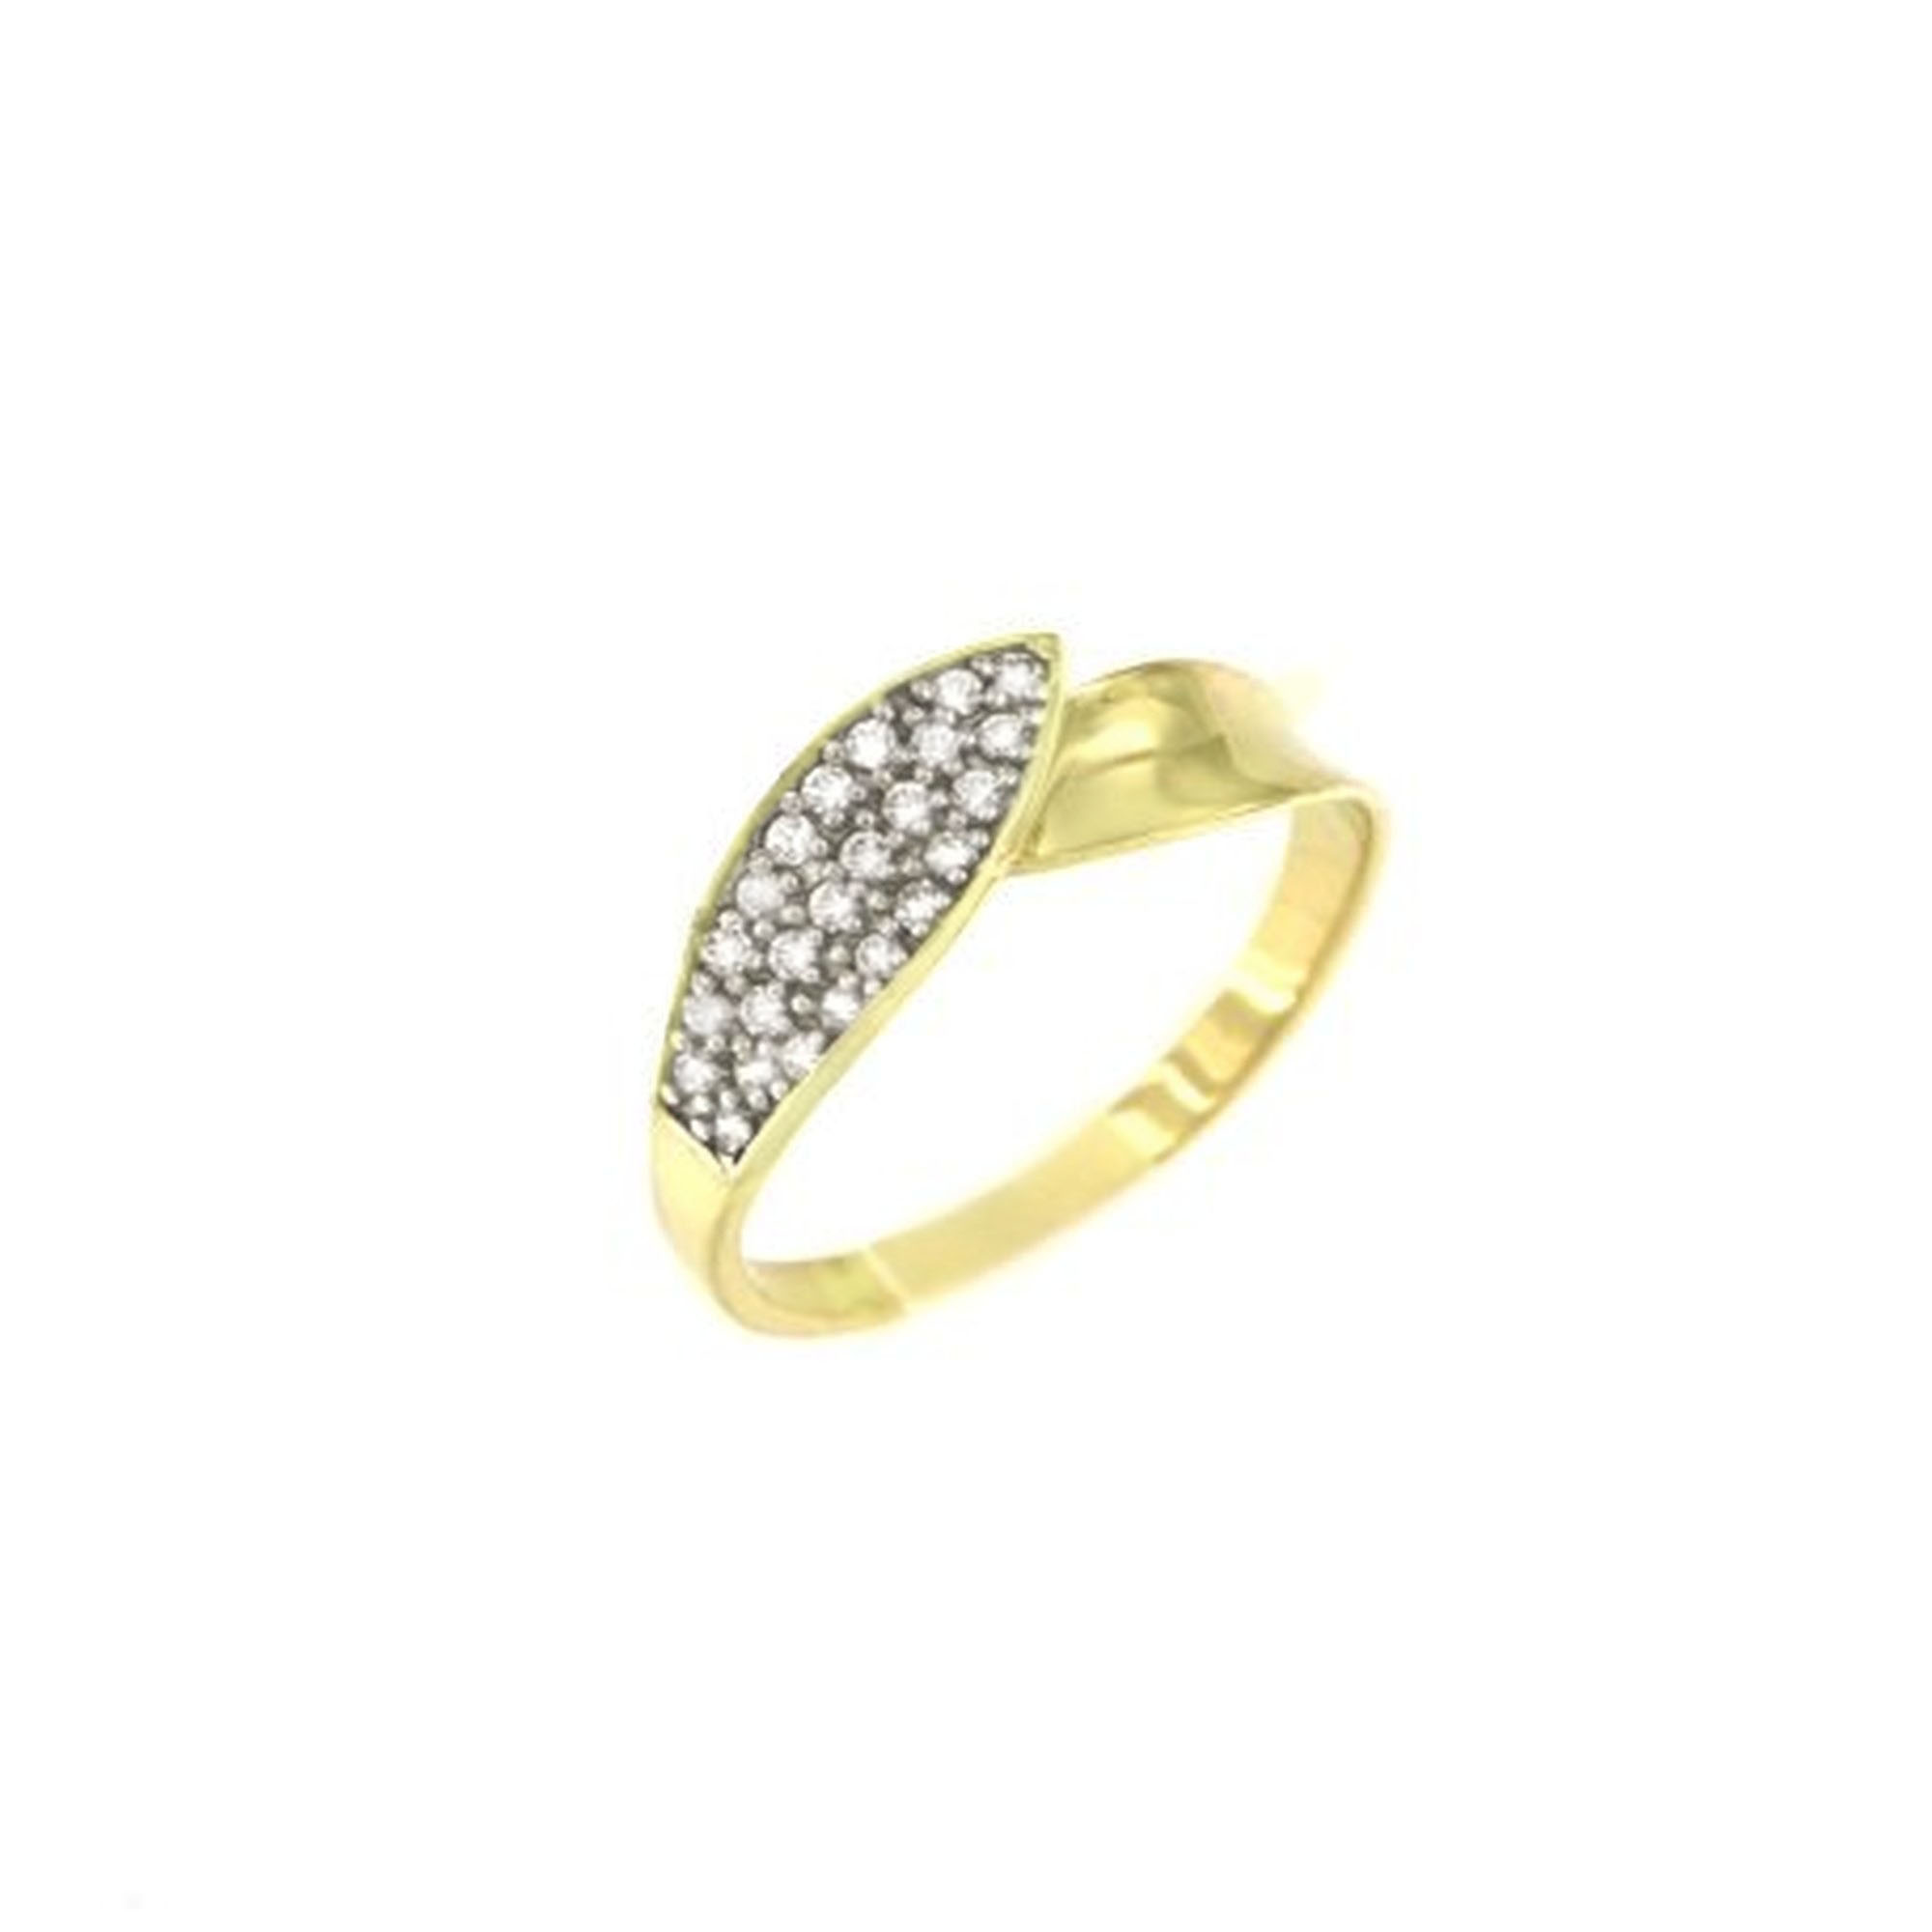 MOISS Moiss prsten ze žlutého zlata ANATOLIE RA000278 Velikost 60 mm RA000278 + doprava ZDARMA